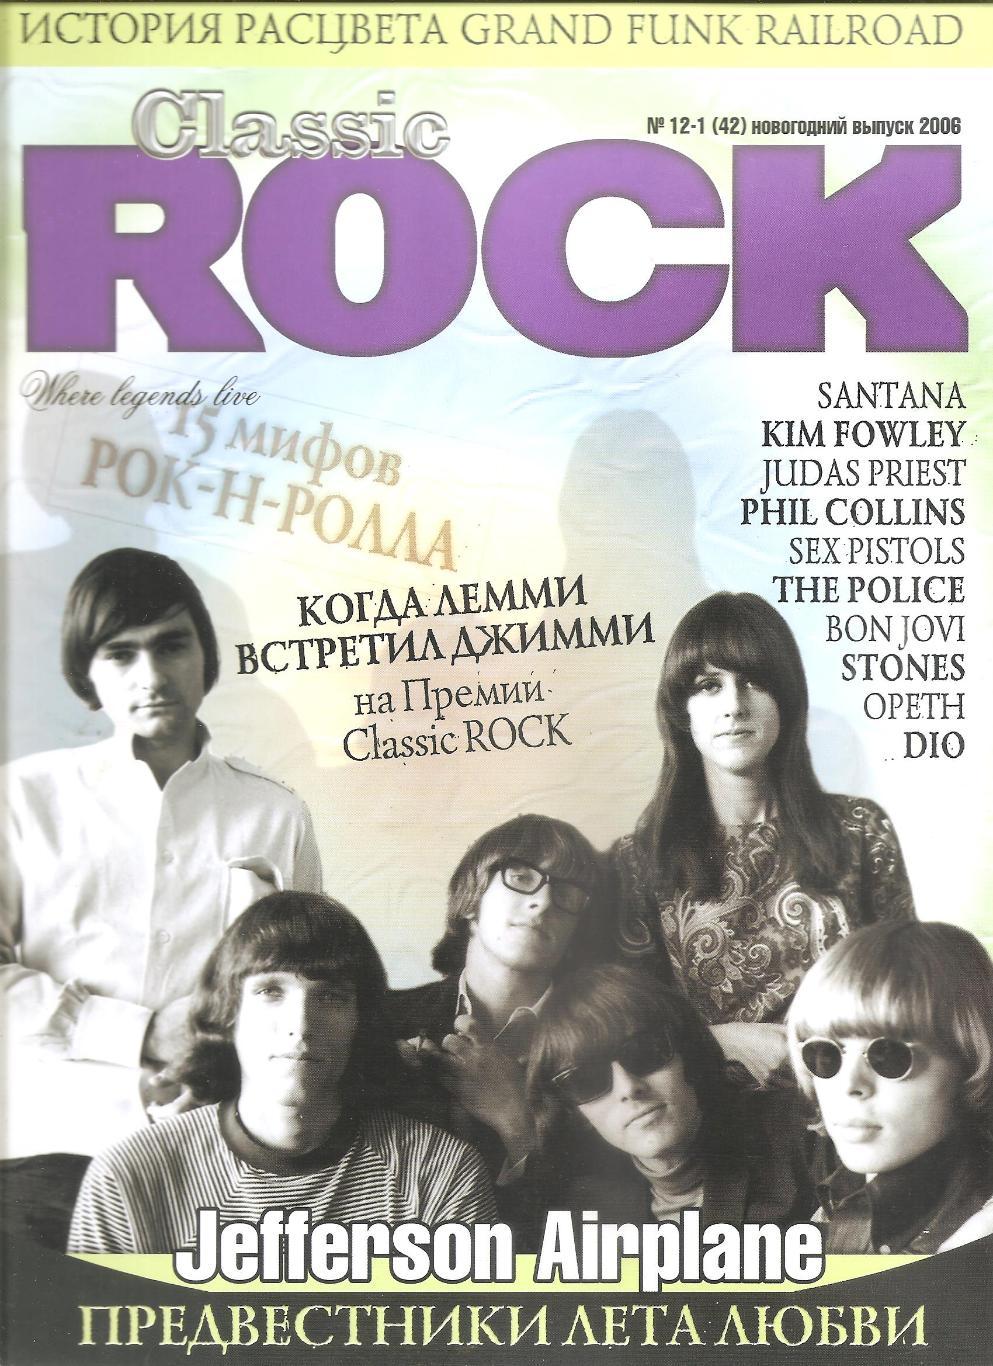 Журнал CLASSIC ROCK # 12-1 (42) новогодний выпуск 2006